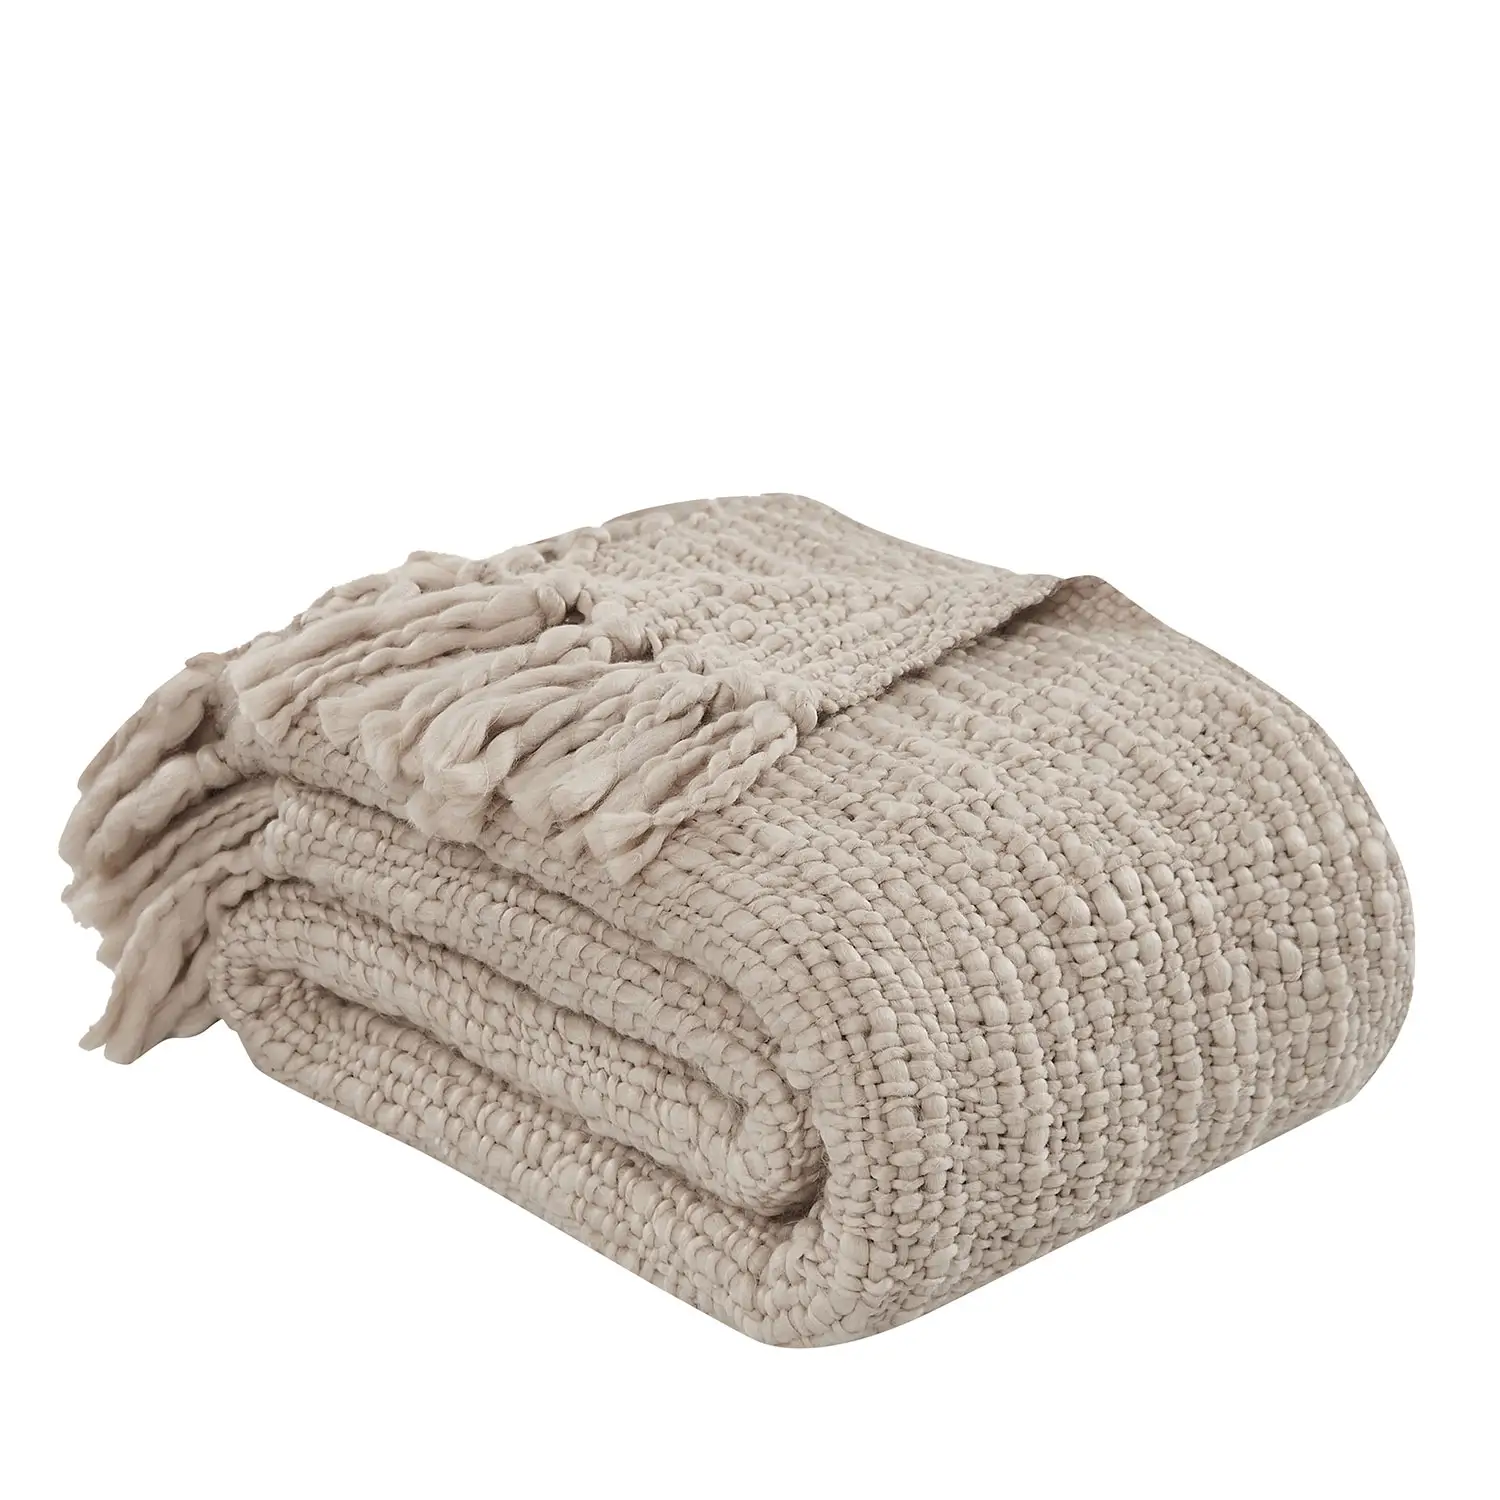 Mantas de tiro tejidas Beige esponjosas térmicas de hilo acrílico de lujo mantas de sofá gruesas extra gruesas en categoría usable